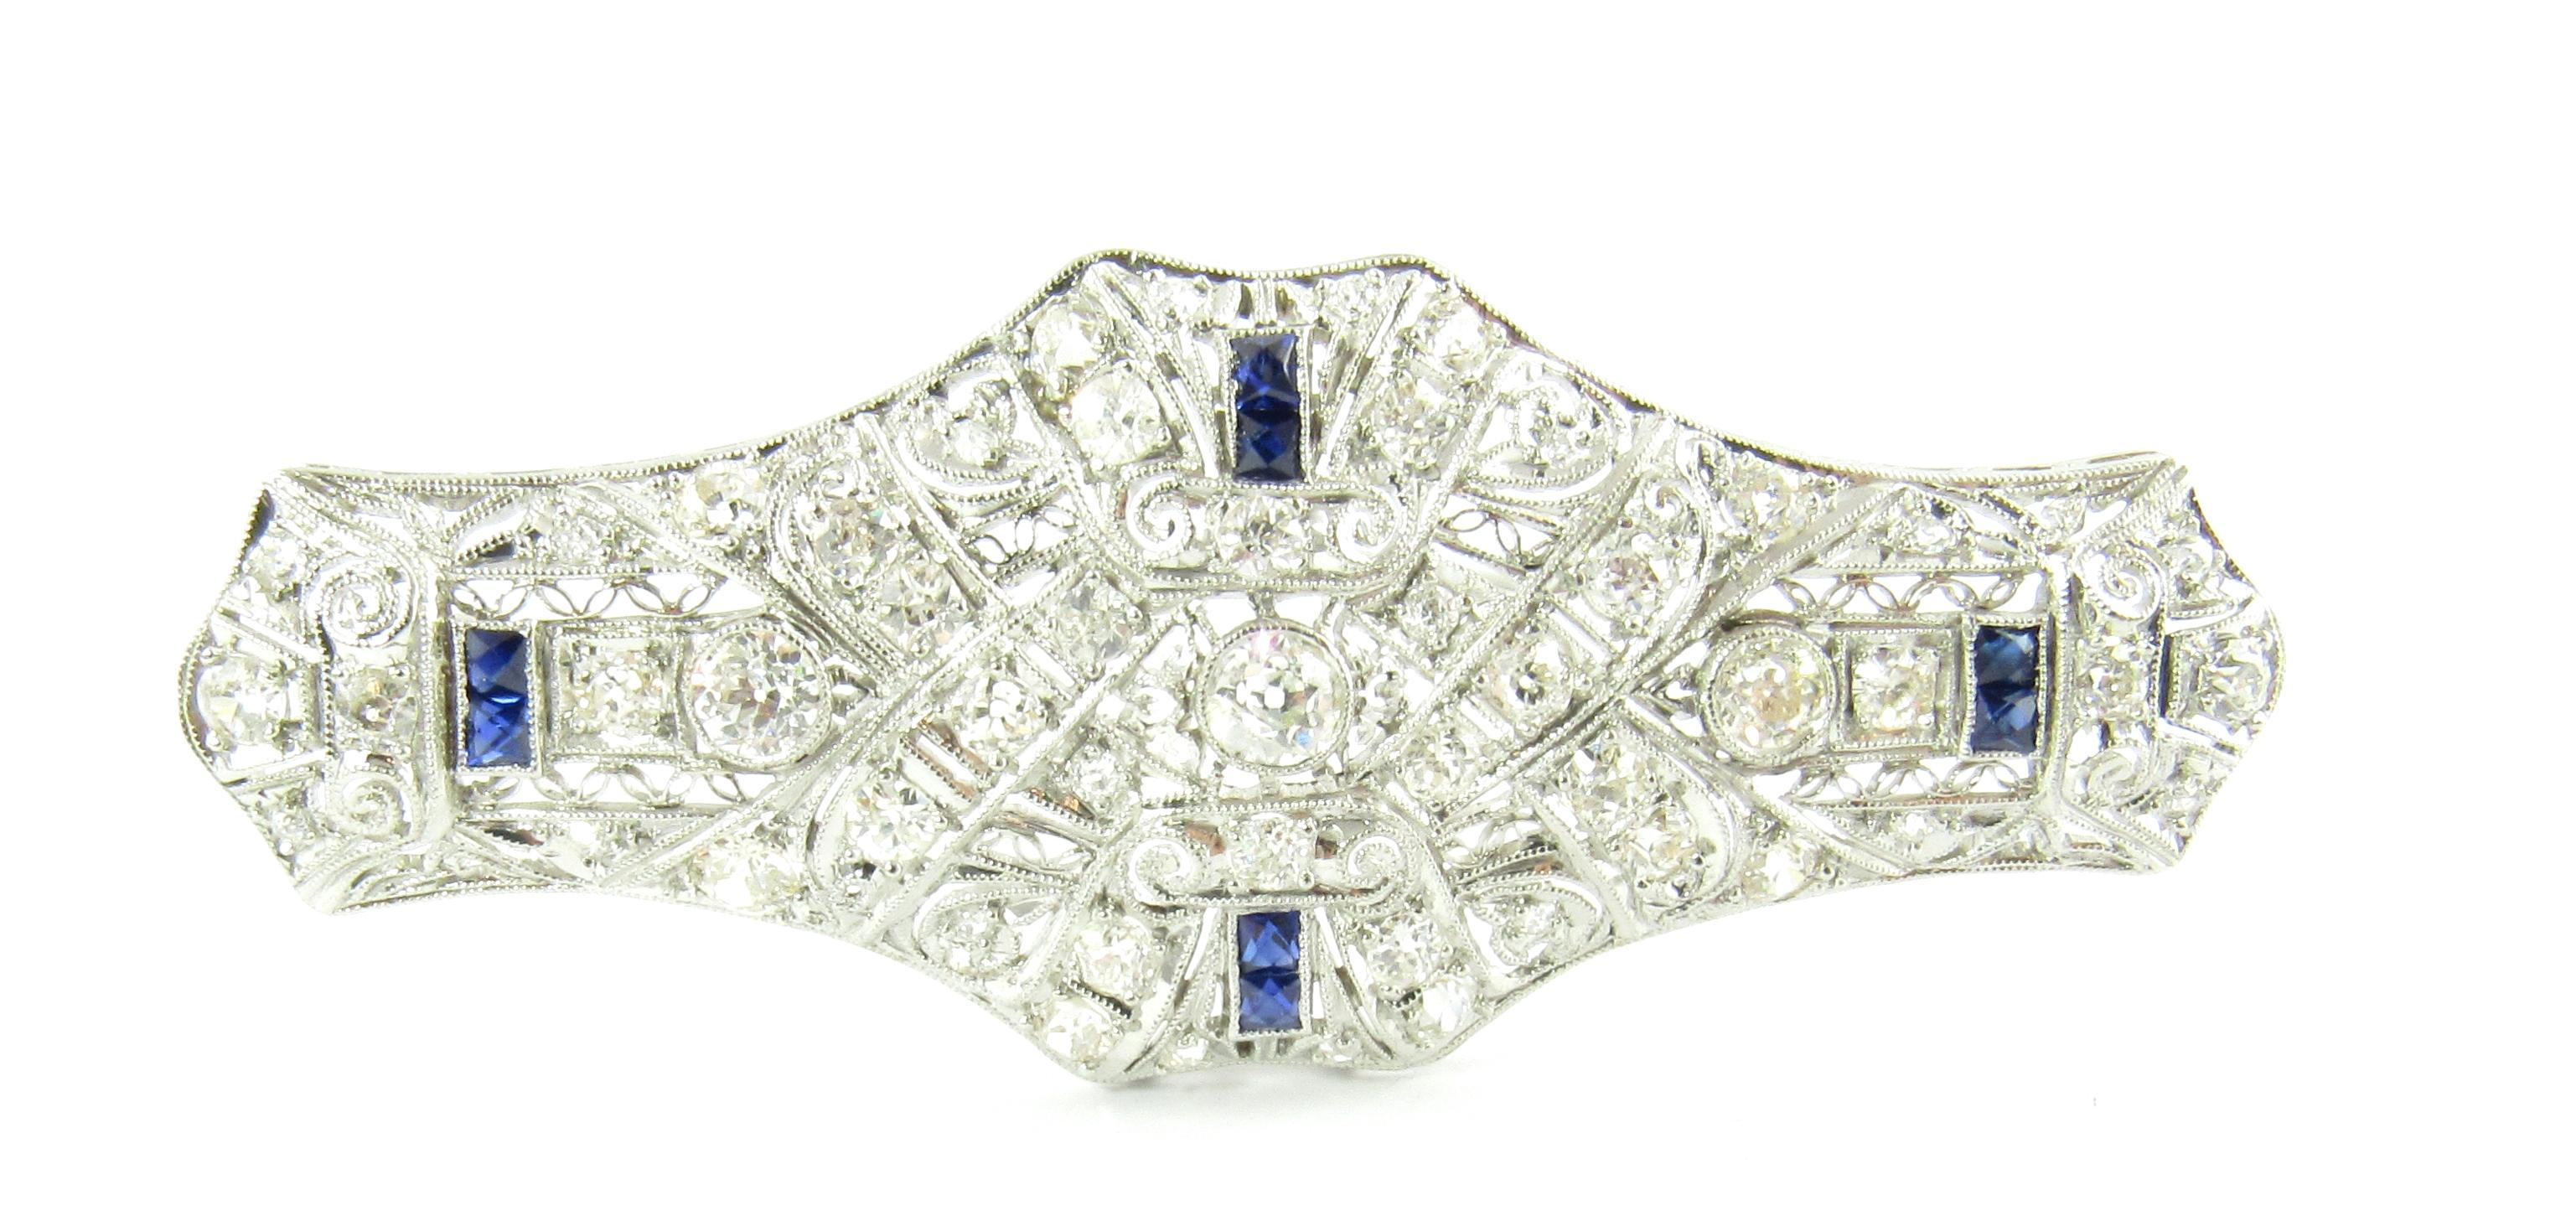 Vintage 14 Karat Weißgold Diamant und Labor erstellt Saphir Brosche / Pin-

Diese spektakuläre Brosche besteht aus vier rechteckigen blauen Saphiren und 48 Diamanten im europäischen/alten Minenschliff, eingefasst in ein wunderschönes